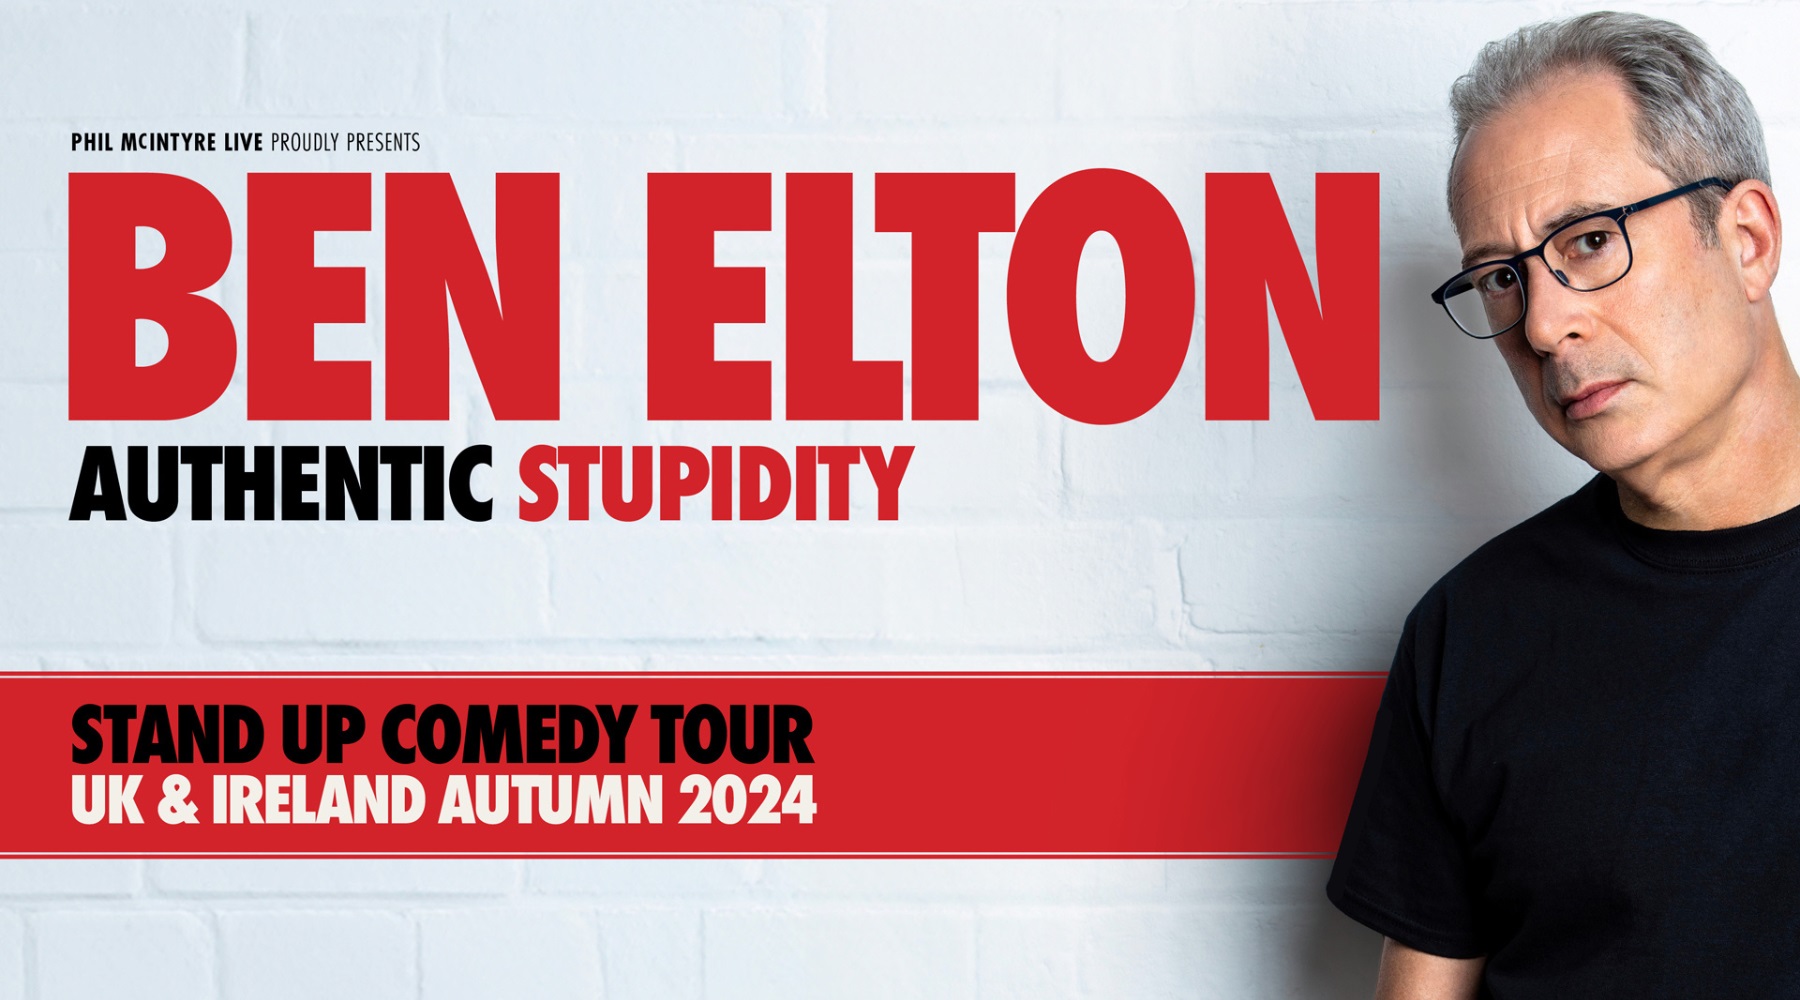 Ben Elton: Authentic Stupidity